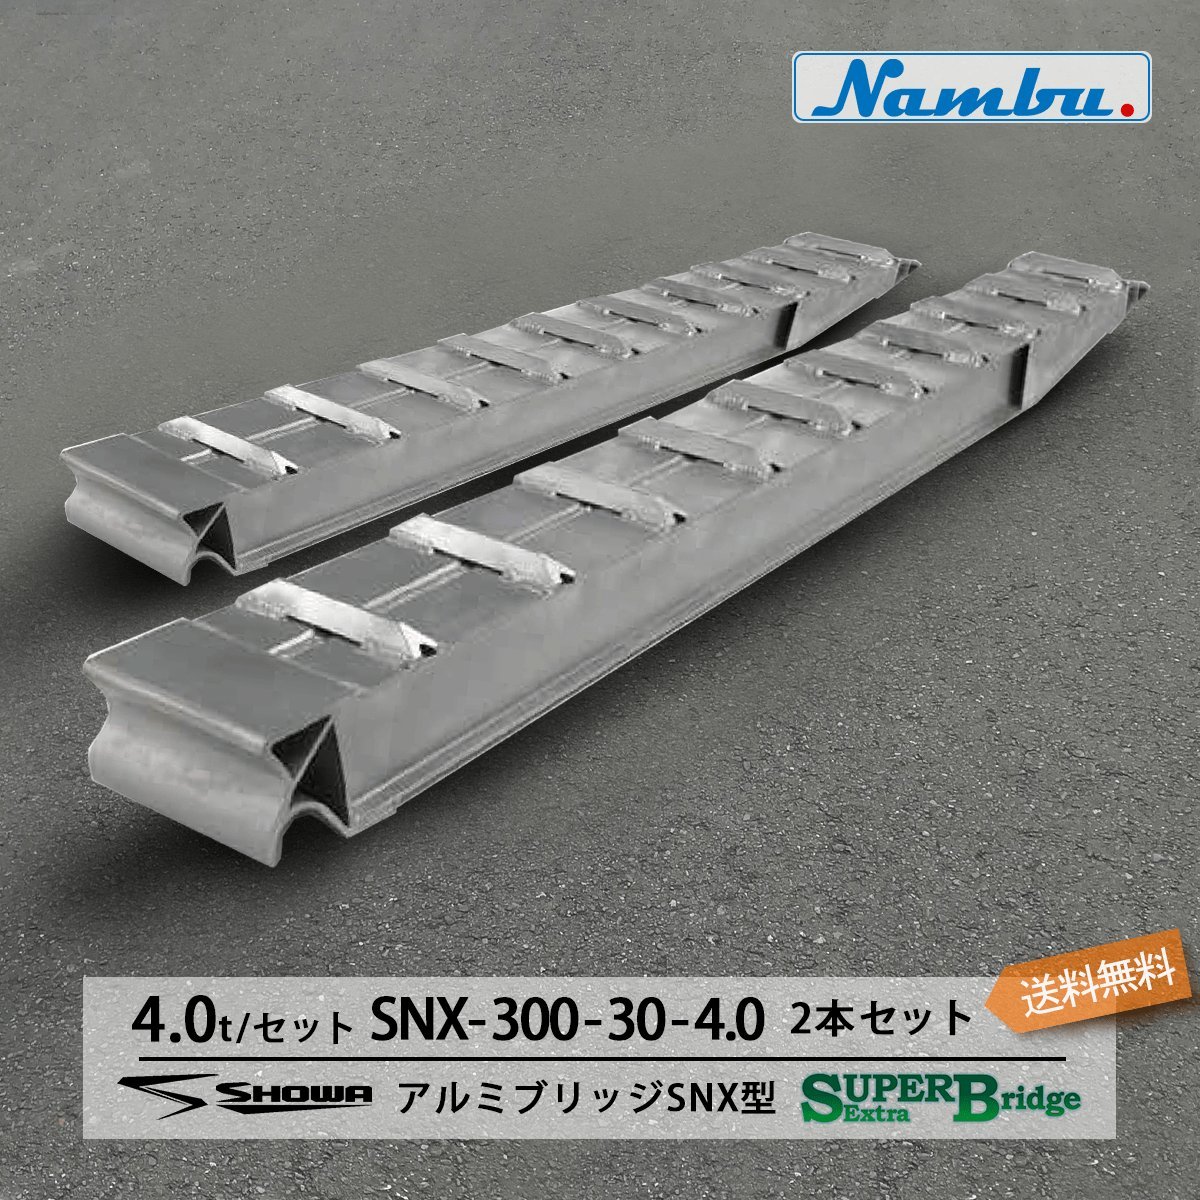 昭和アルミブリッジ SXN-300-30-4.0 4.0t(4t) ツメ式 全長3000/有効幅300(mm) 2本 組